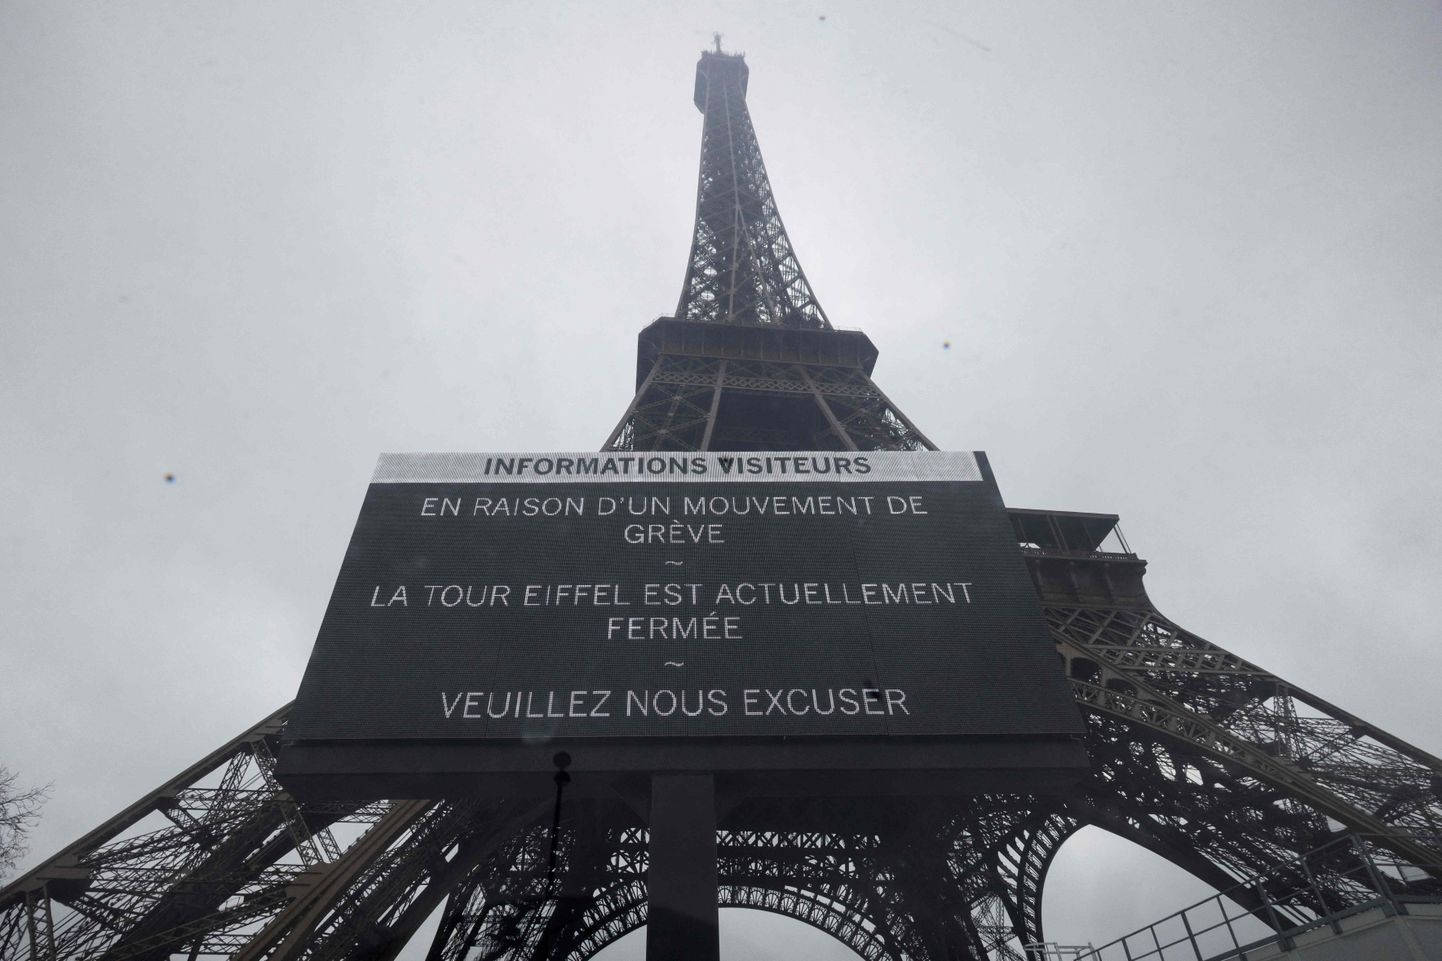 Teadete tahvel infoga, et Eiffeli torni töötajate streigi tõttu on torn külastajatele suletud.